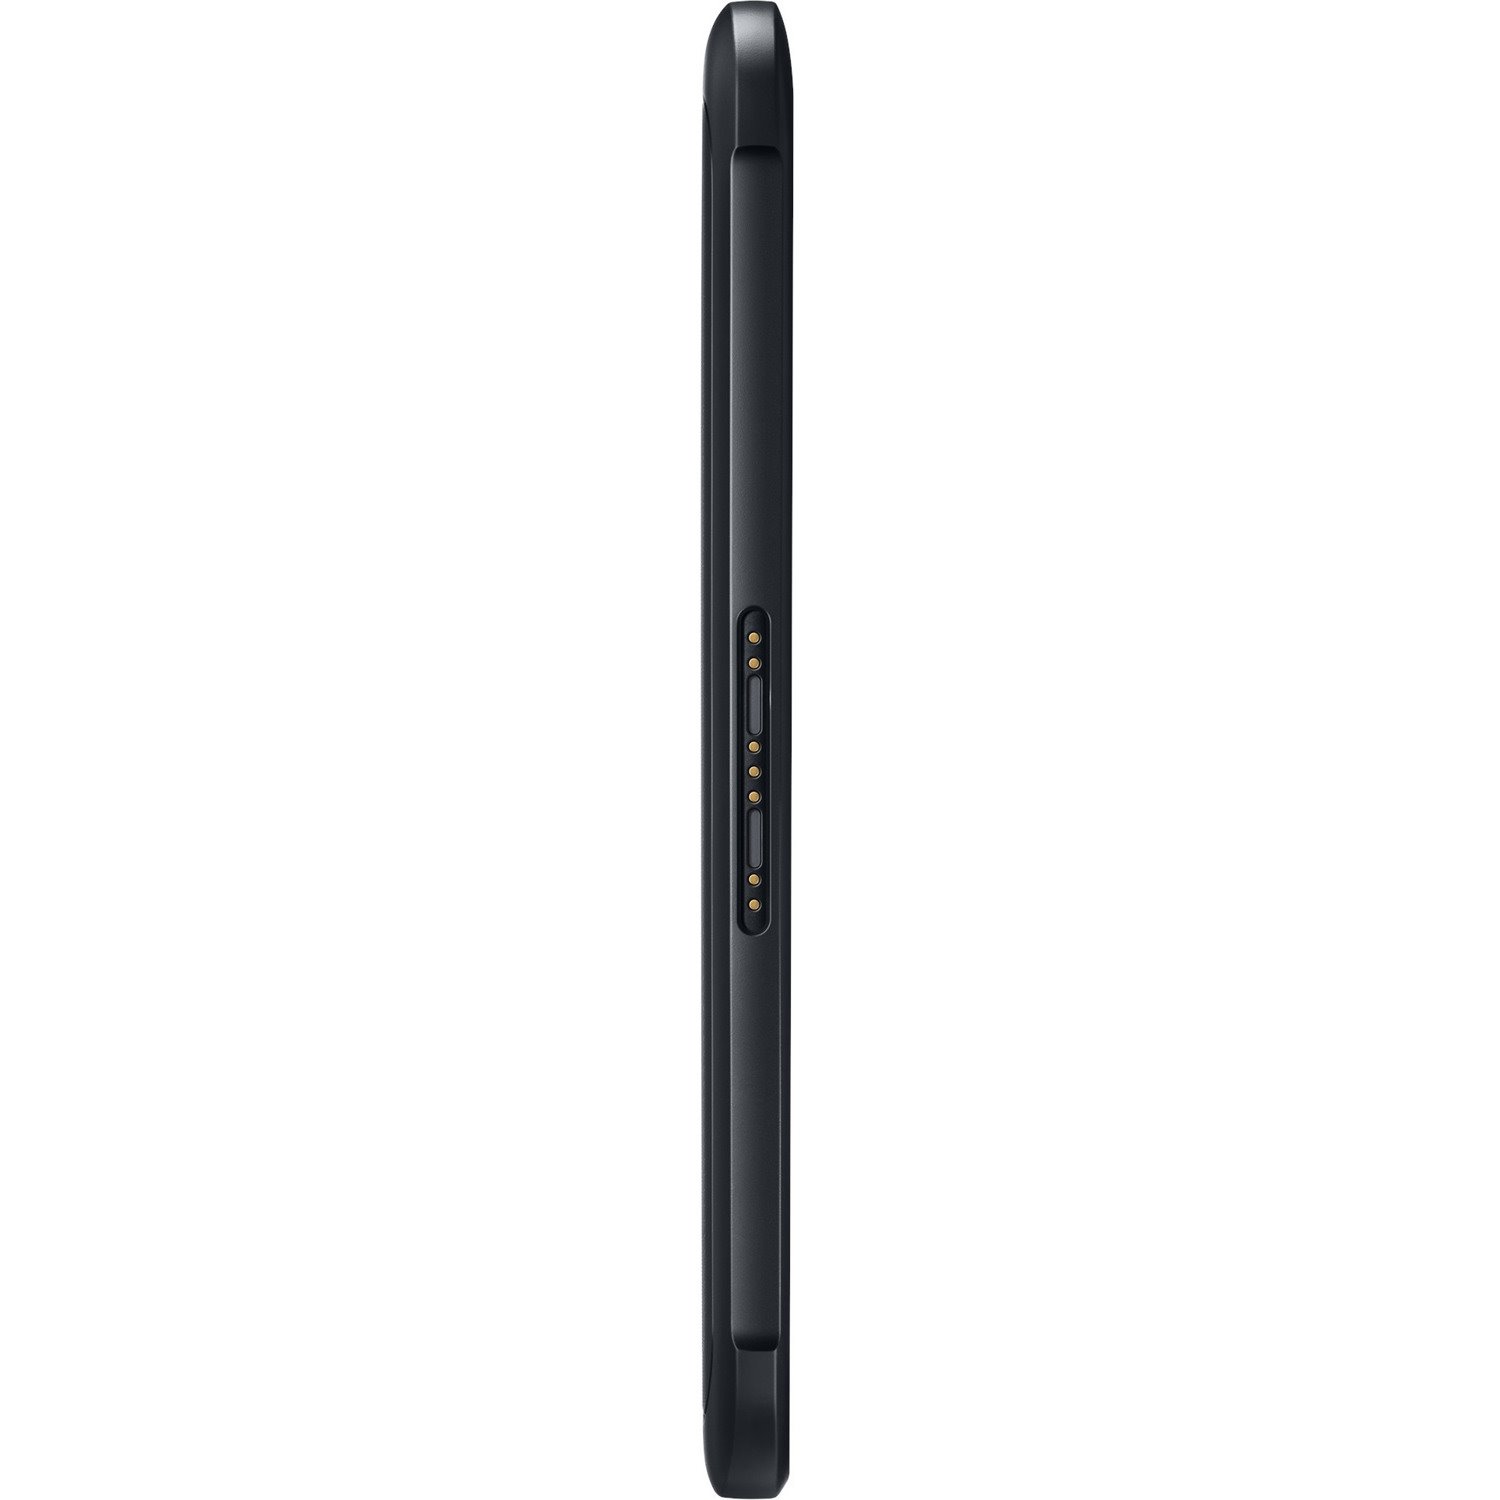 Samsung Galaxy Tab Active3 SM-T575 Rugged Tablet - 8" WUXGA - Samsung Exynos 9810 - 4 GB - 128 GB Storage - 4G - Black